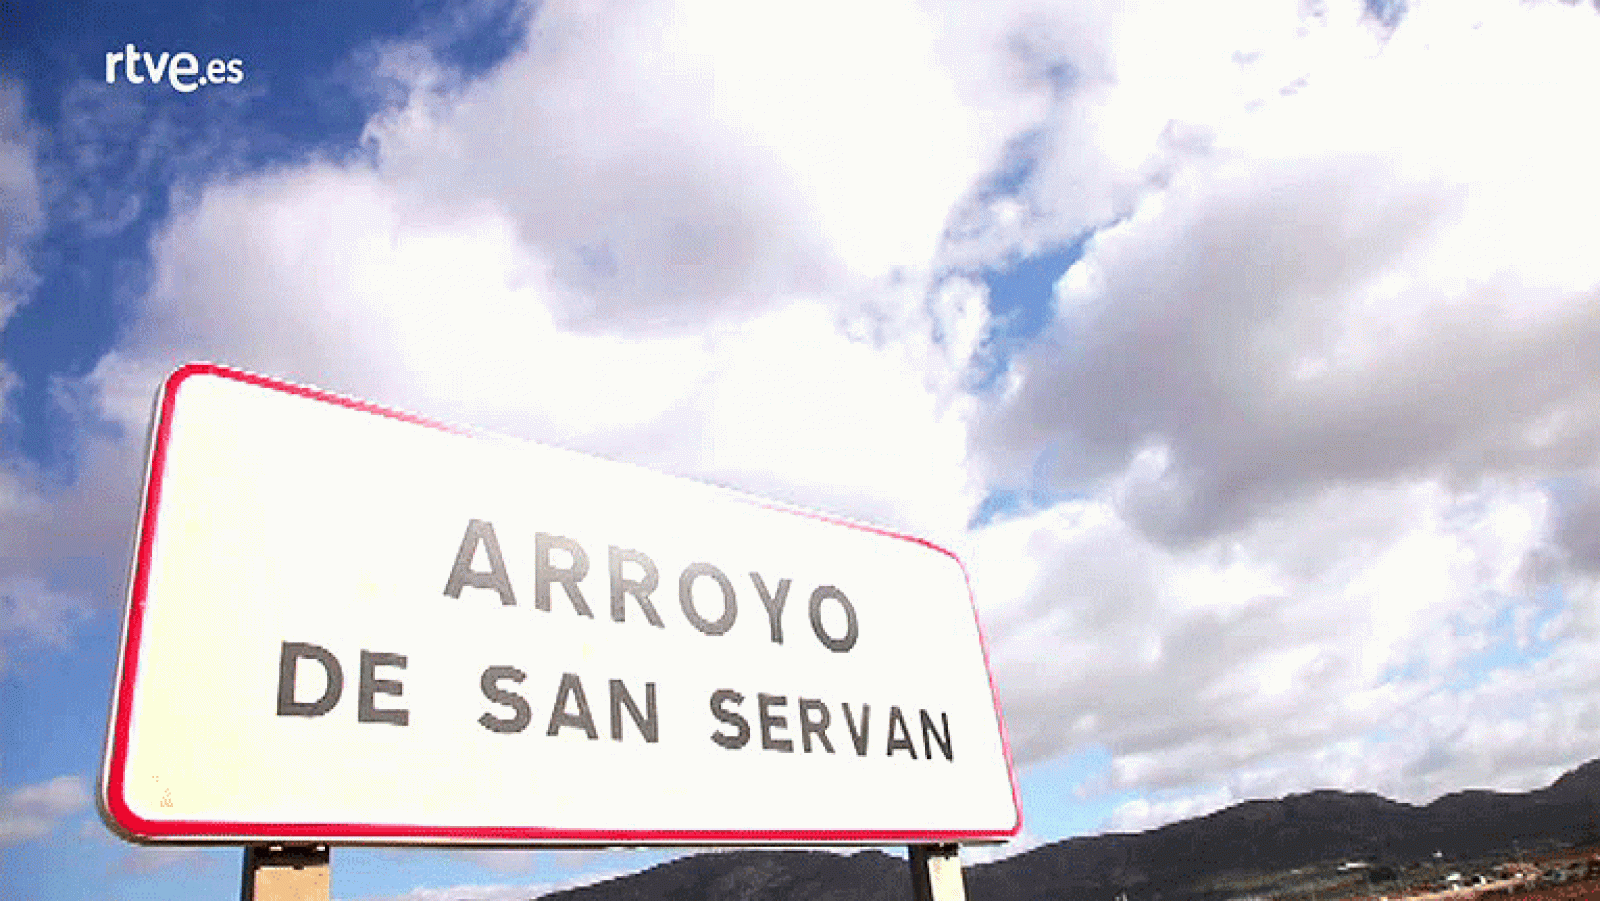 El Pueblo Más Divertido - Arroyo de San Serván, el pueblo de Miki Nadal - Ver Ahora